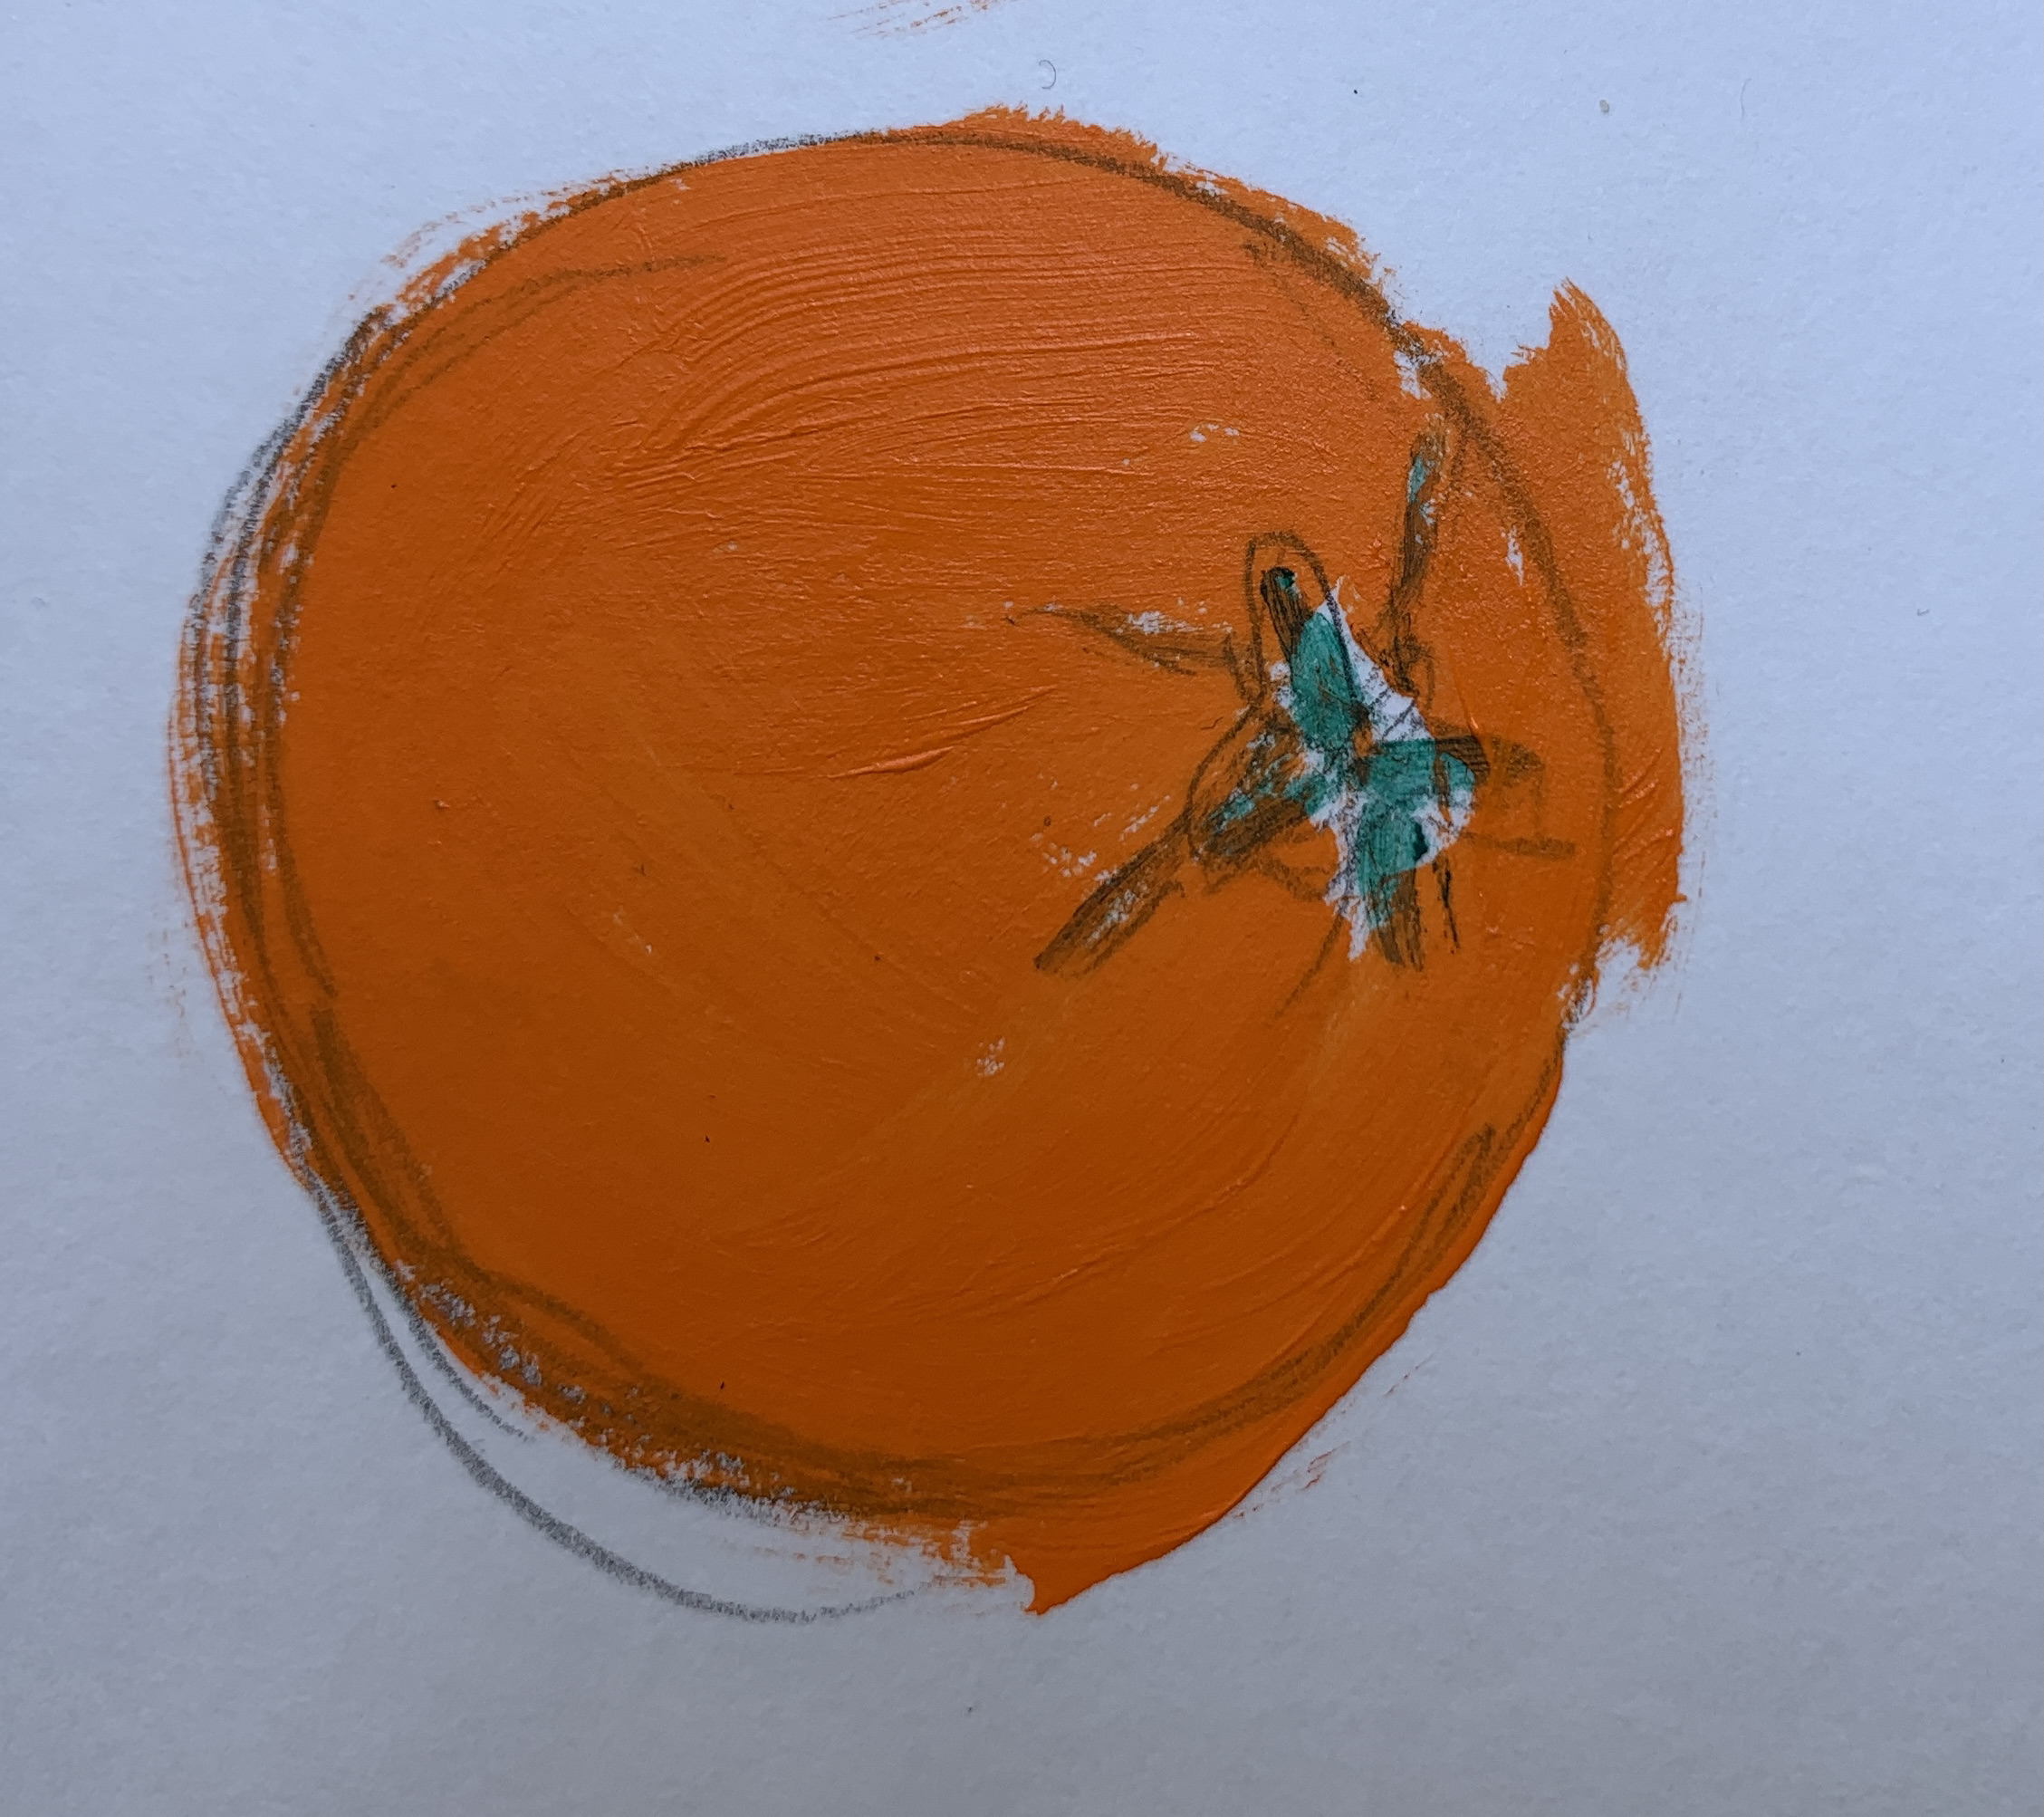 Colored-in orange on white paper